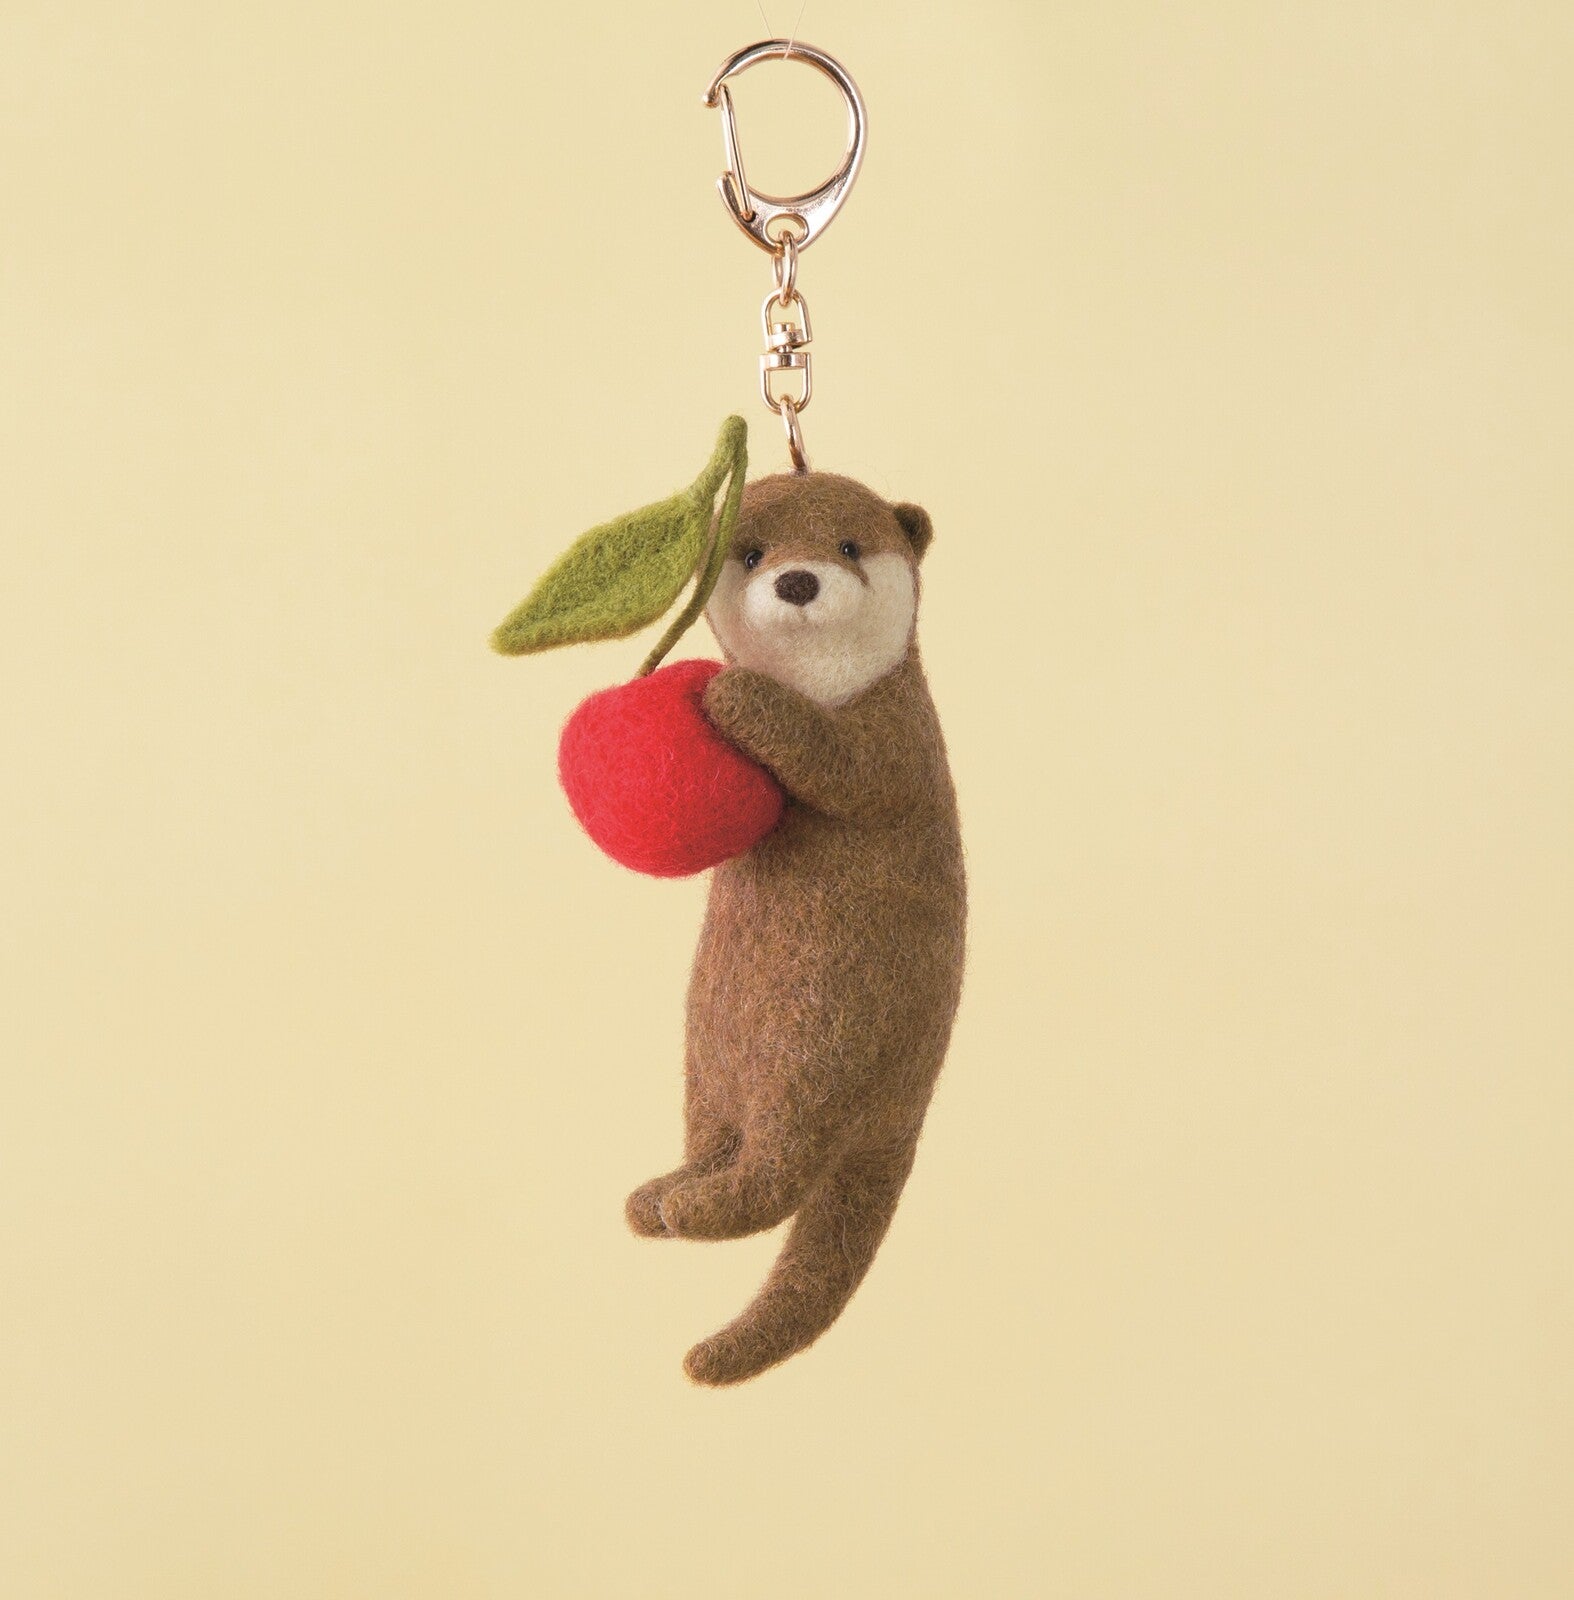 Hamanaka Needle Felting Kit - Otter with Cherry Keyring